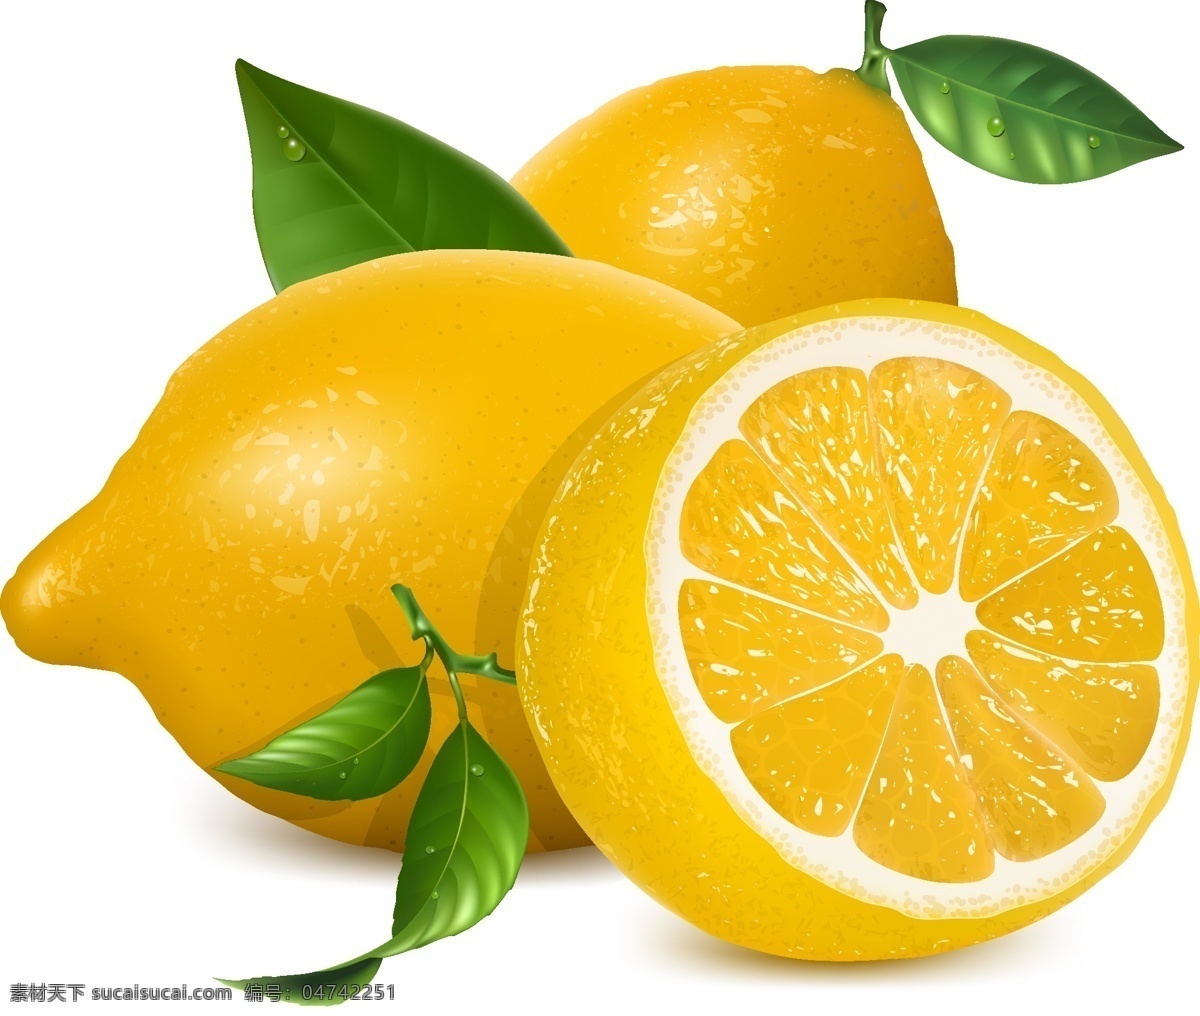 柠檬 橙子 柑橘 桔子 绿叶 生物世界 矢量素材 水果 新鲜 柠檬矢量素材 柠檬模板下载 新鲜水果 矢量 矢量图 日常生活